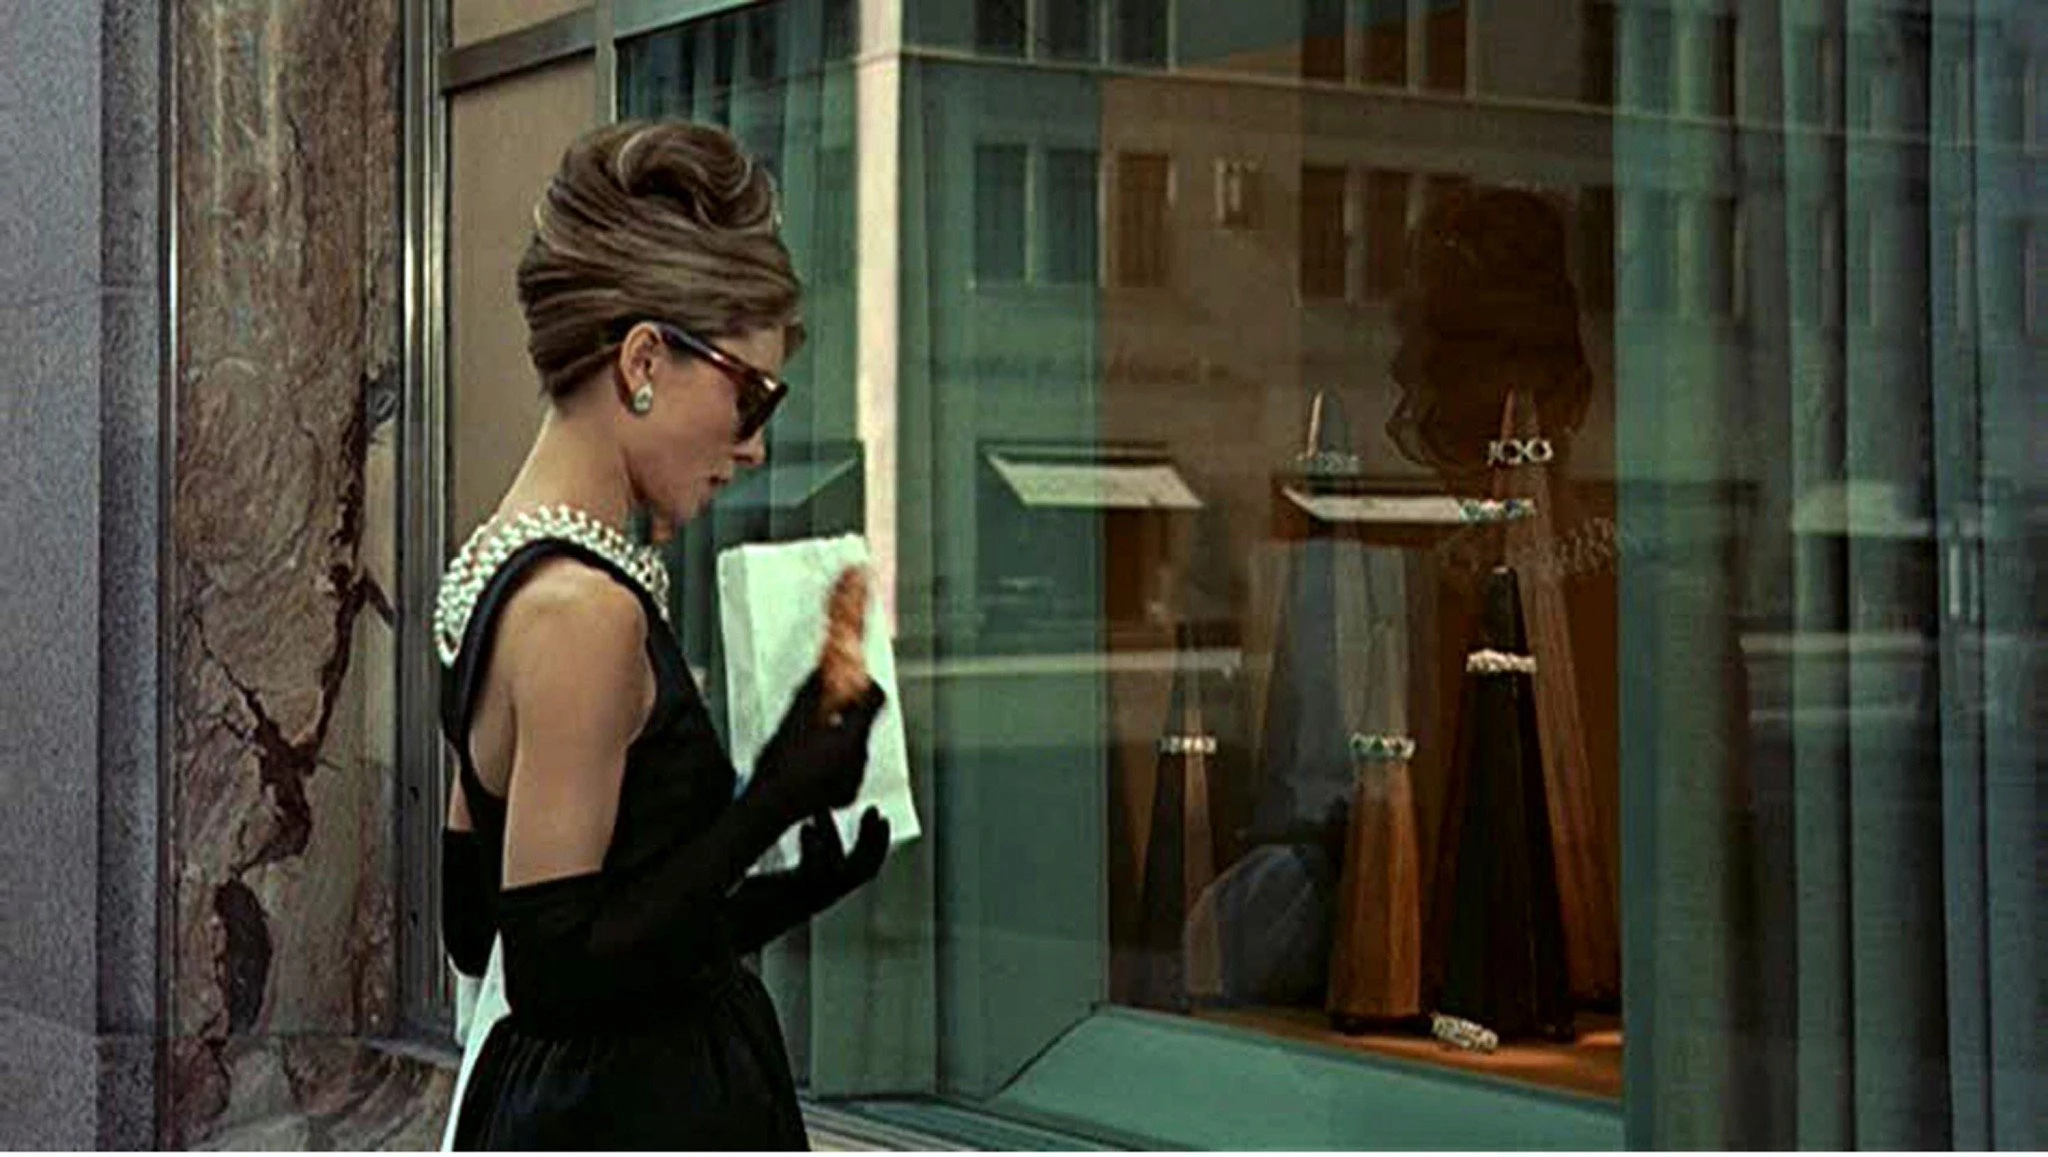 Одрі Гепберн у ролі Голлі Ґолайтлі в фільмі "Сніданок у Тіффані", 1961, реж. Блейк Едвардс